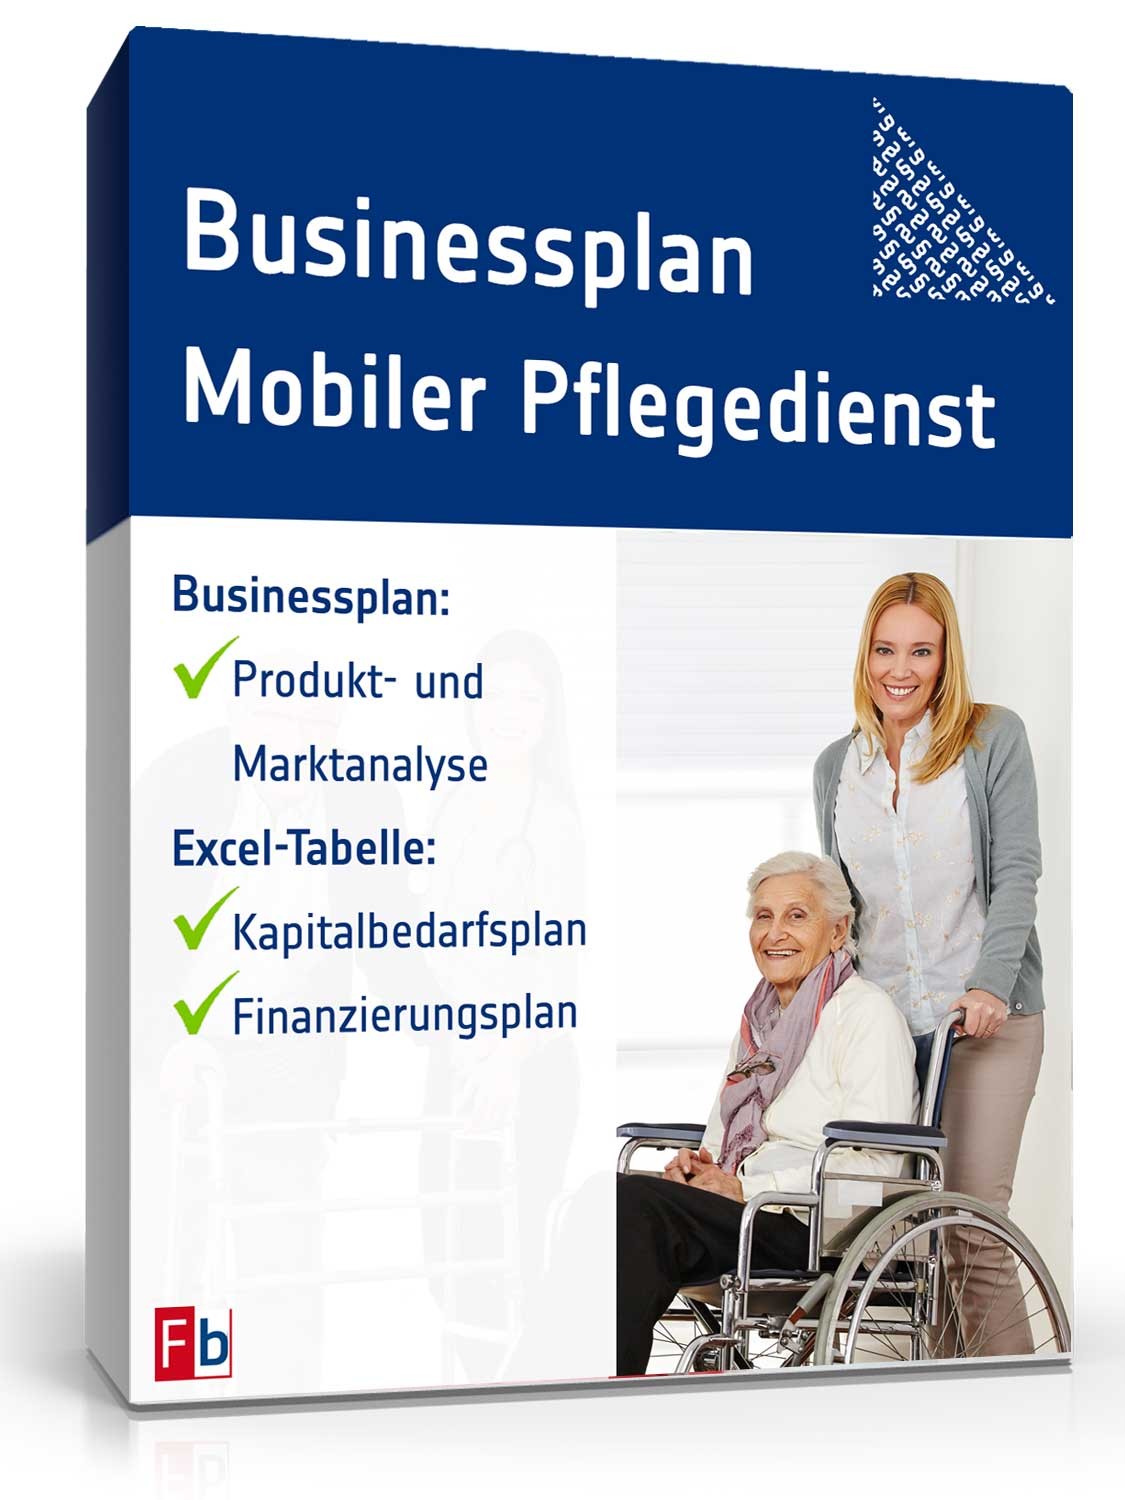 Hauptbild des Produkts: Businessplan Mobiler Pflegedienst